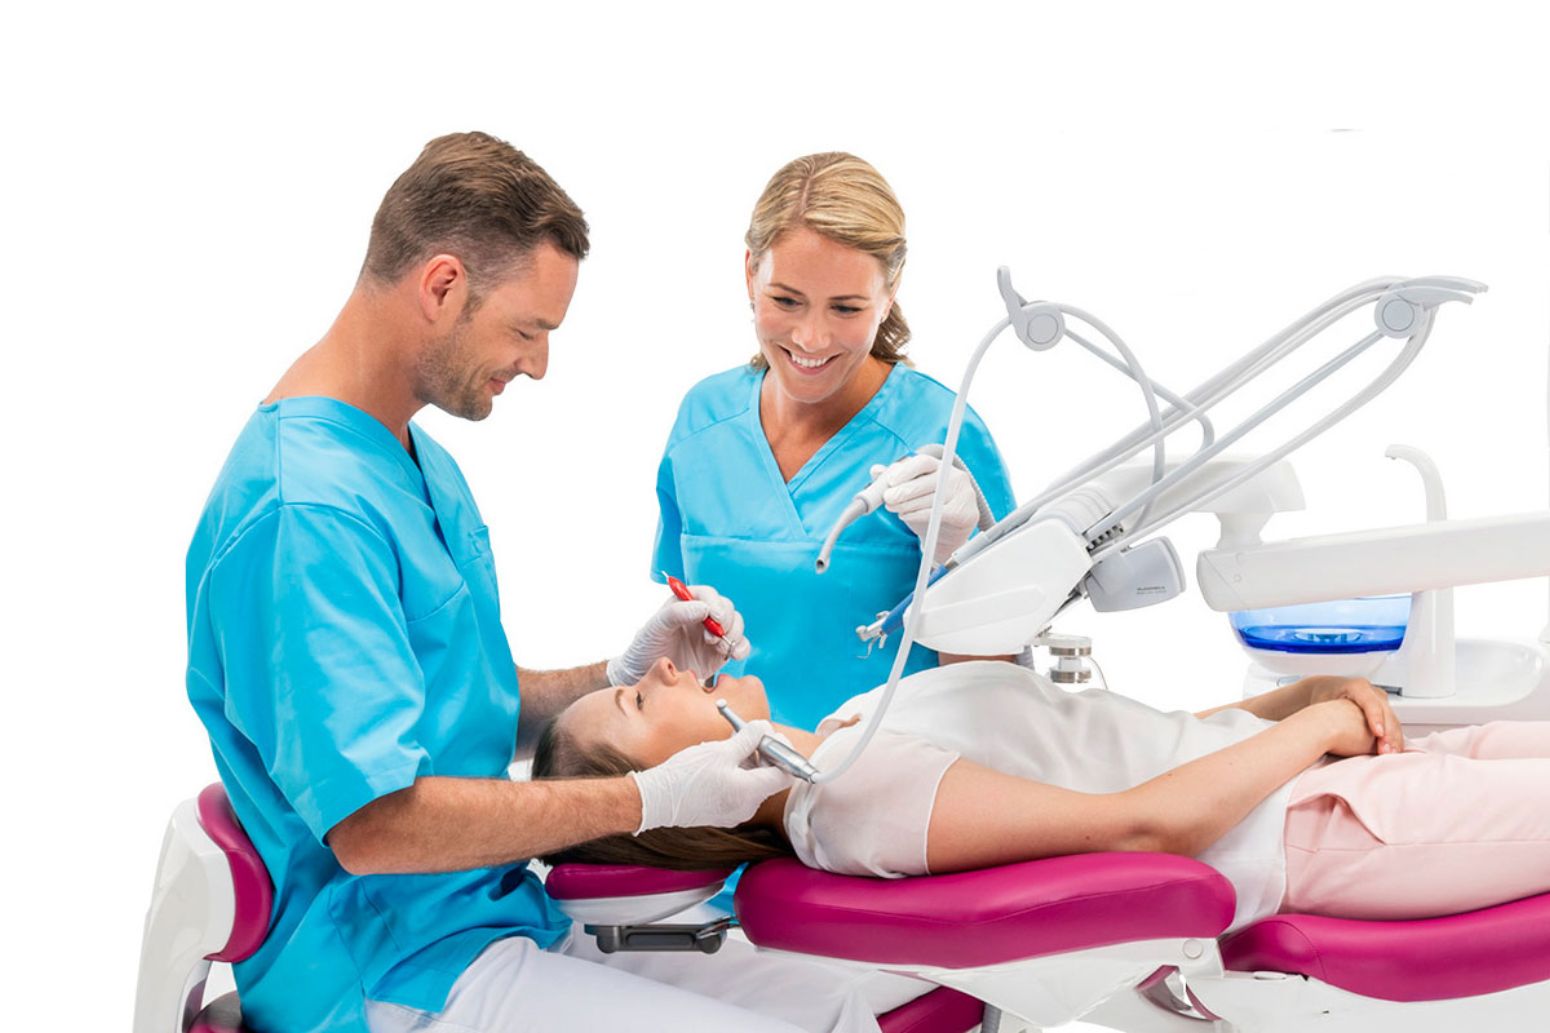 En glad kvinde sidder med armene omkring patientstolen på en tandlægeunit